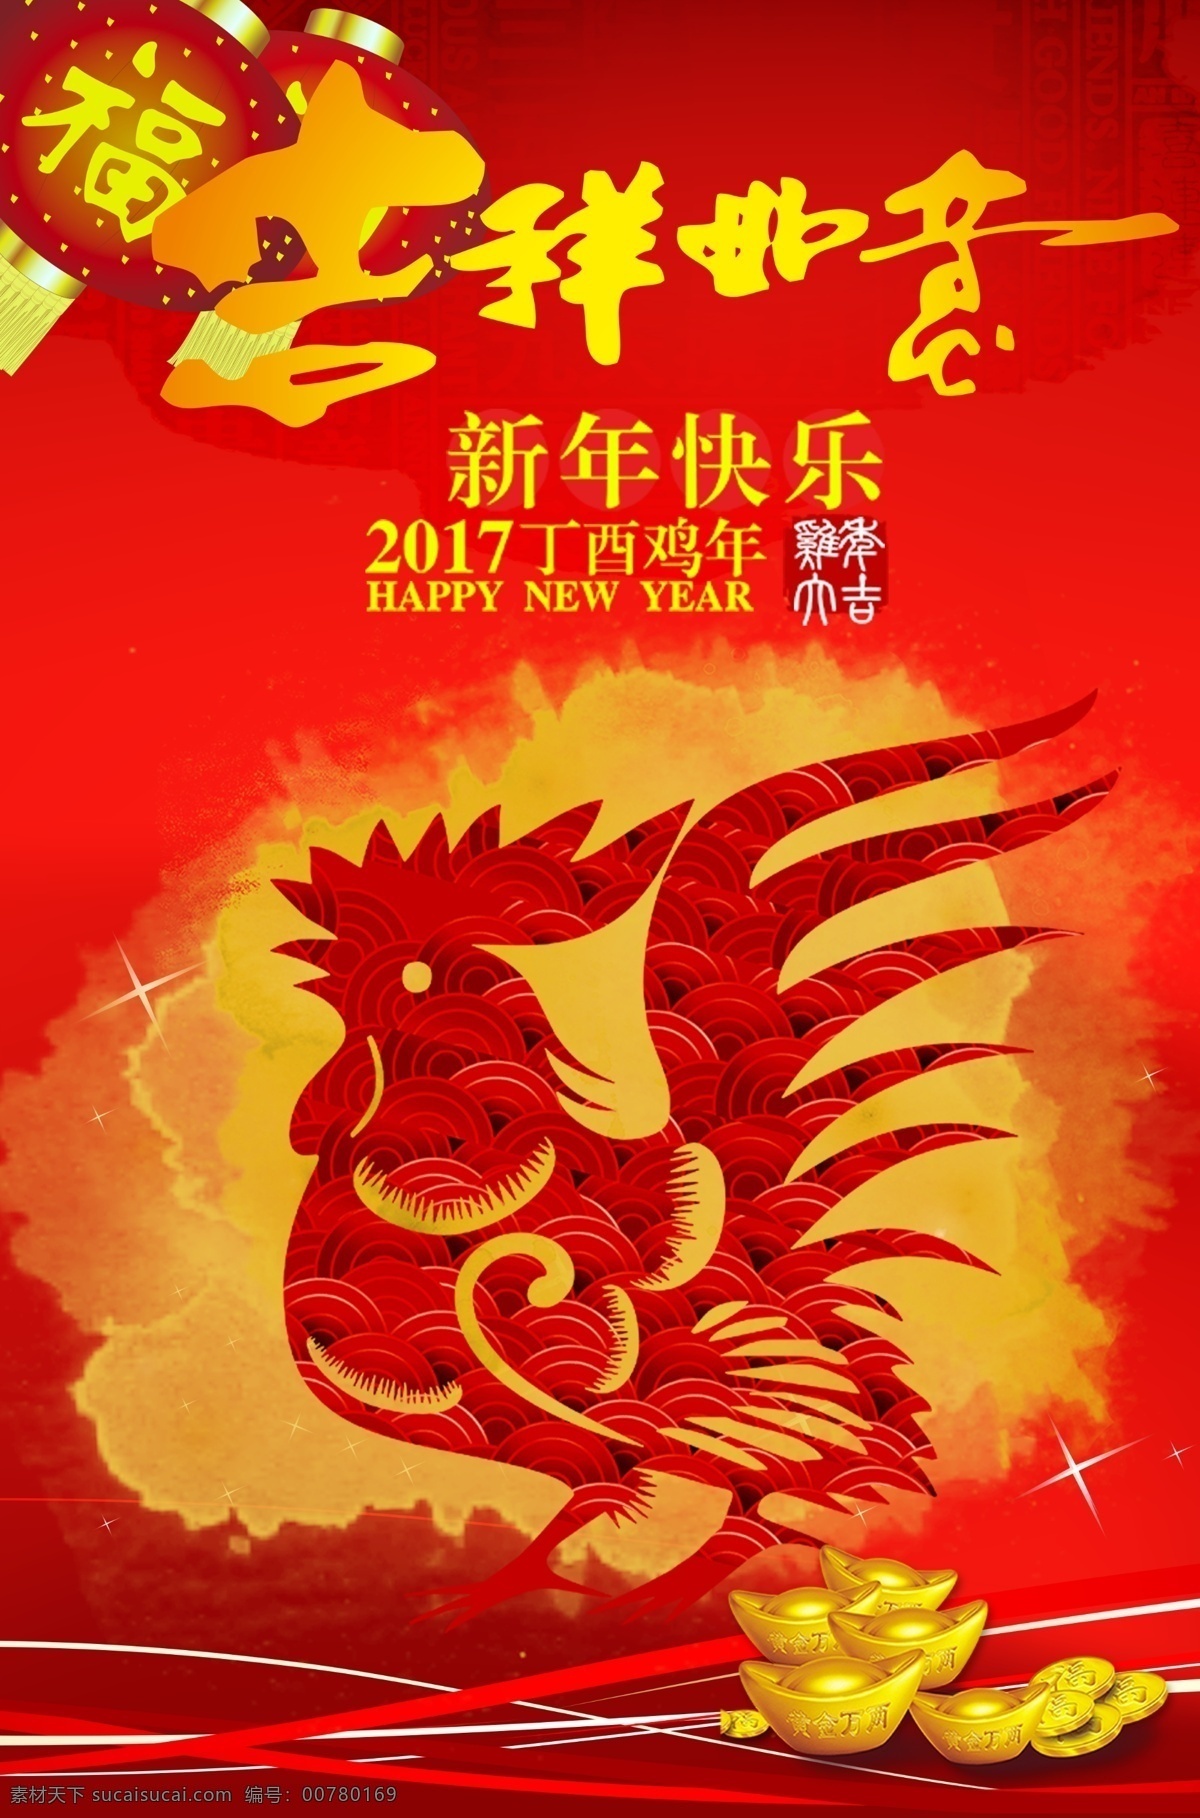 2017 鸡年 新年 万事如意 海报 新年海报素材 中国传统元素 鸡年海报 cg回忆 传统节日海报 中国 传统文化 宣传 鸡 红色 金元宝